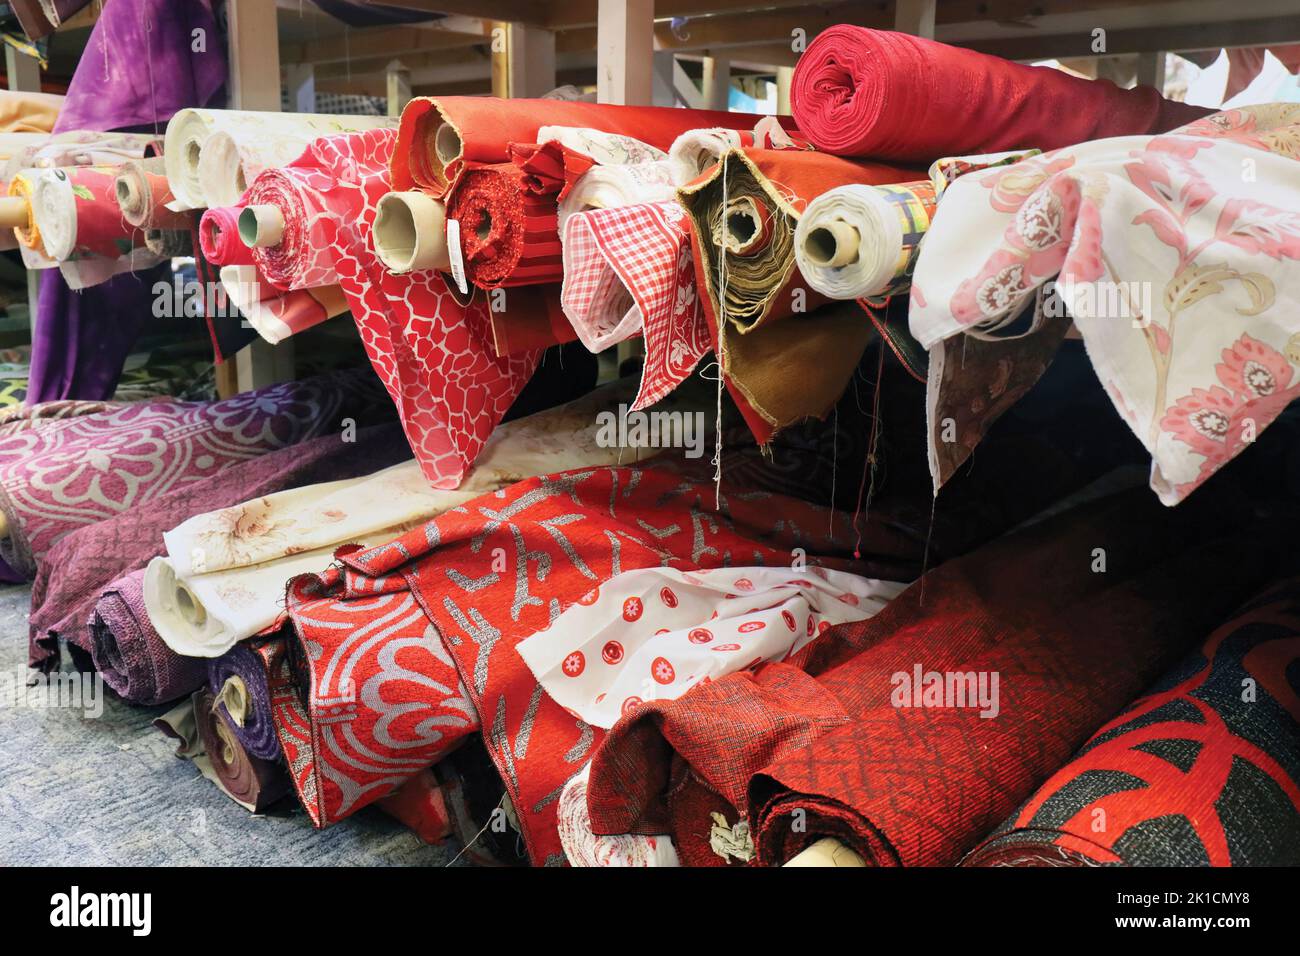 Rotoli di materiale in un negozio di tessuti. Foto Stock